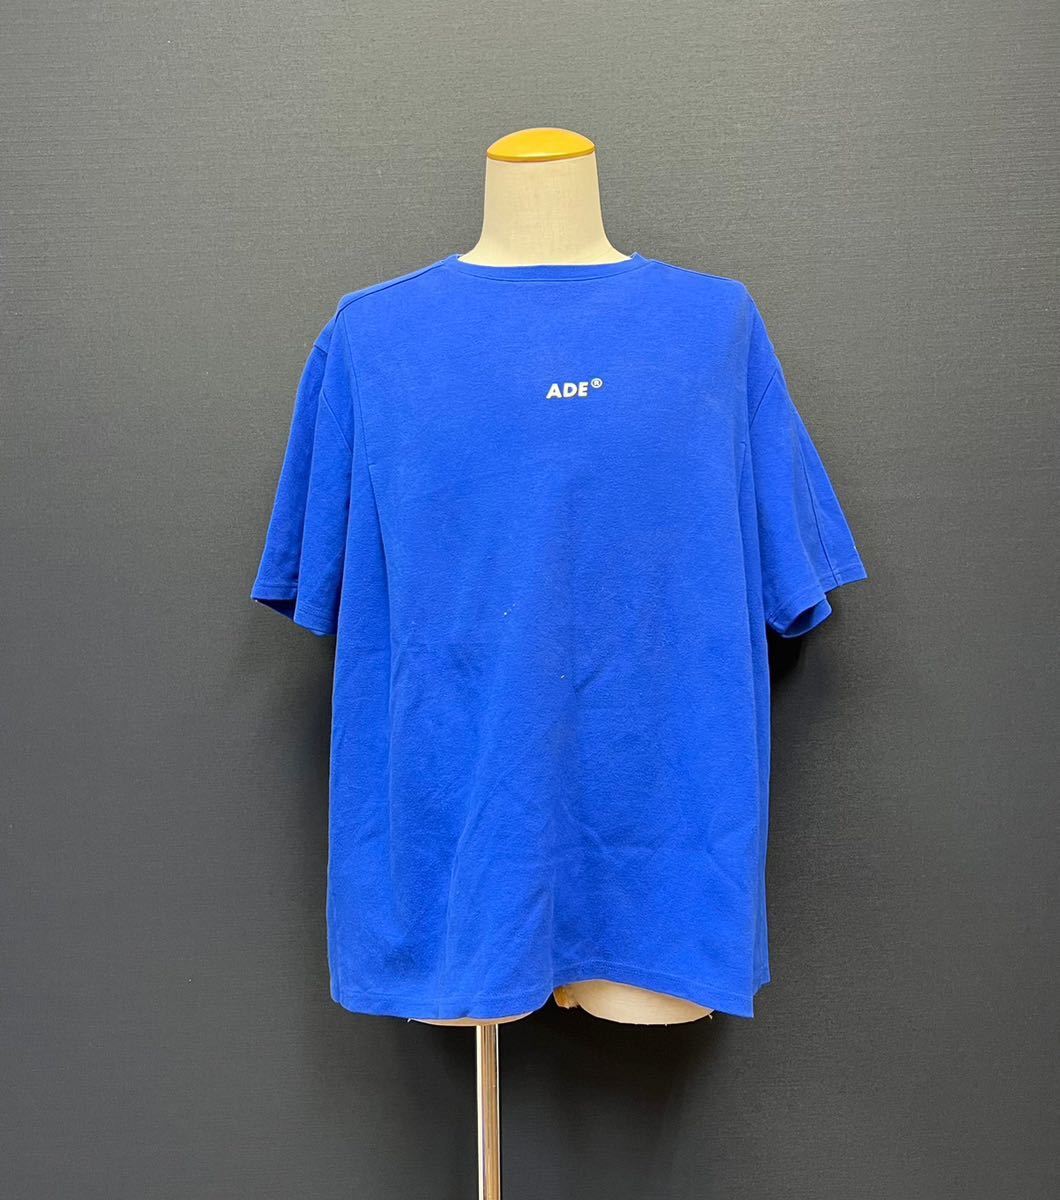 初回限定】 ブルー 3 size Tシャツ ショートスリーブ ロゴ アーダー